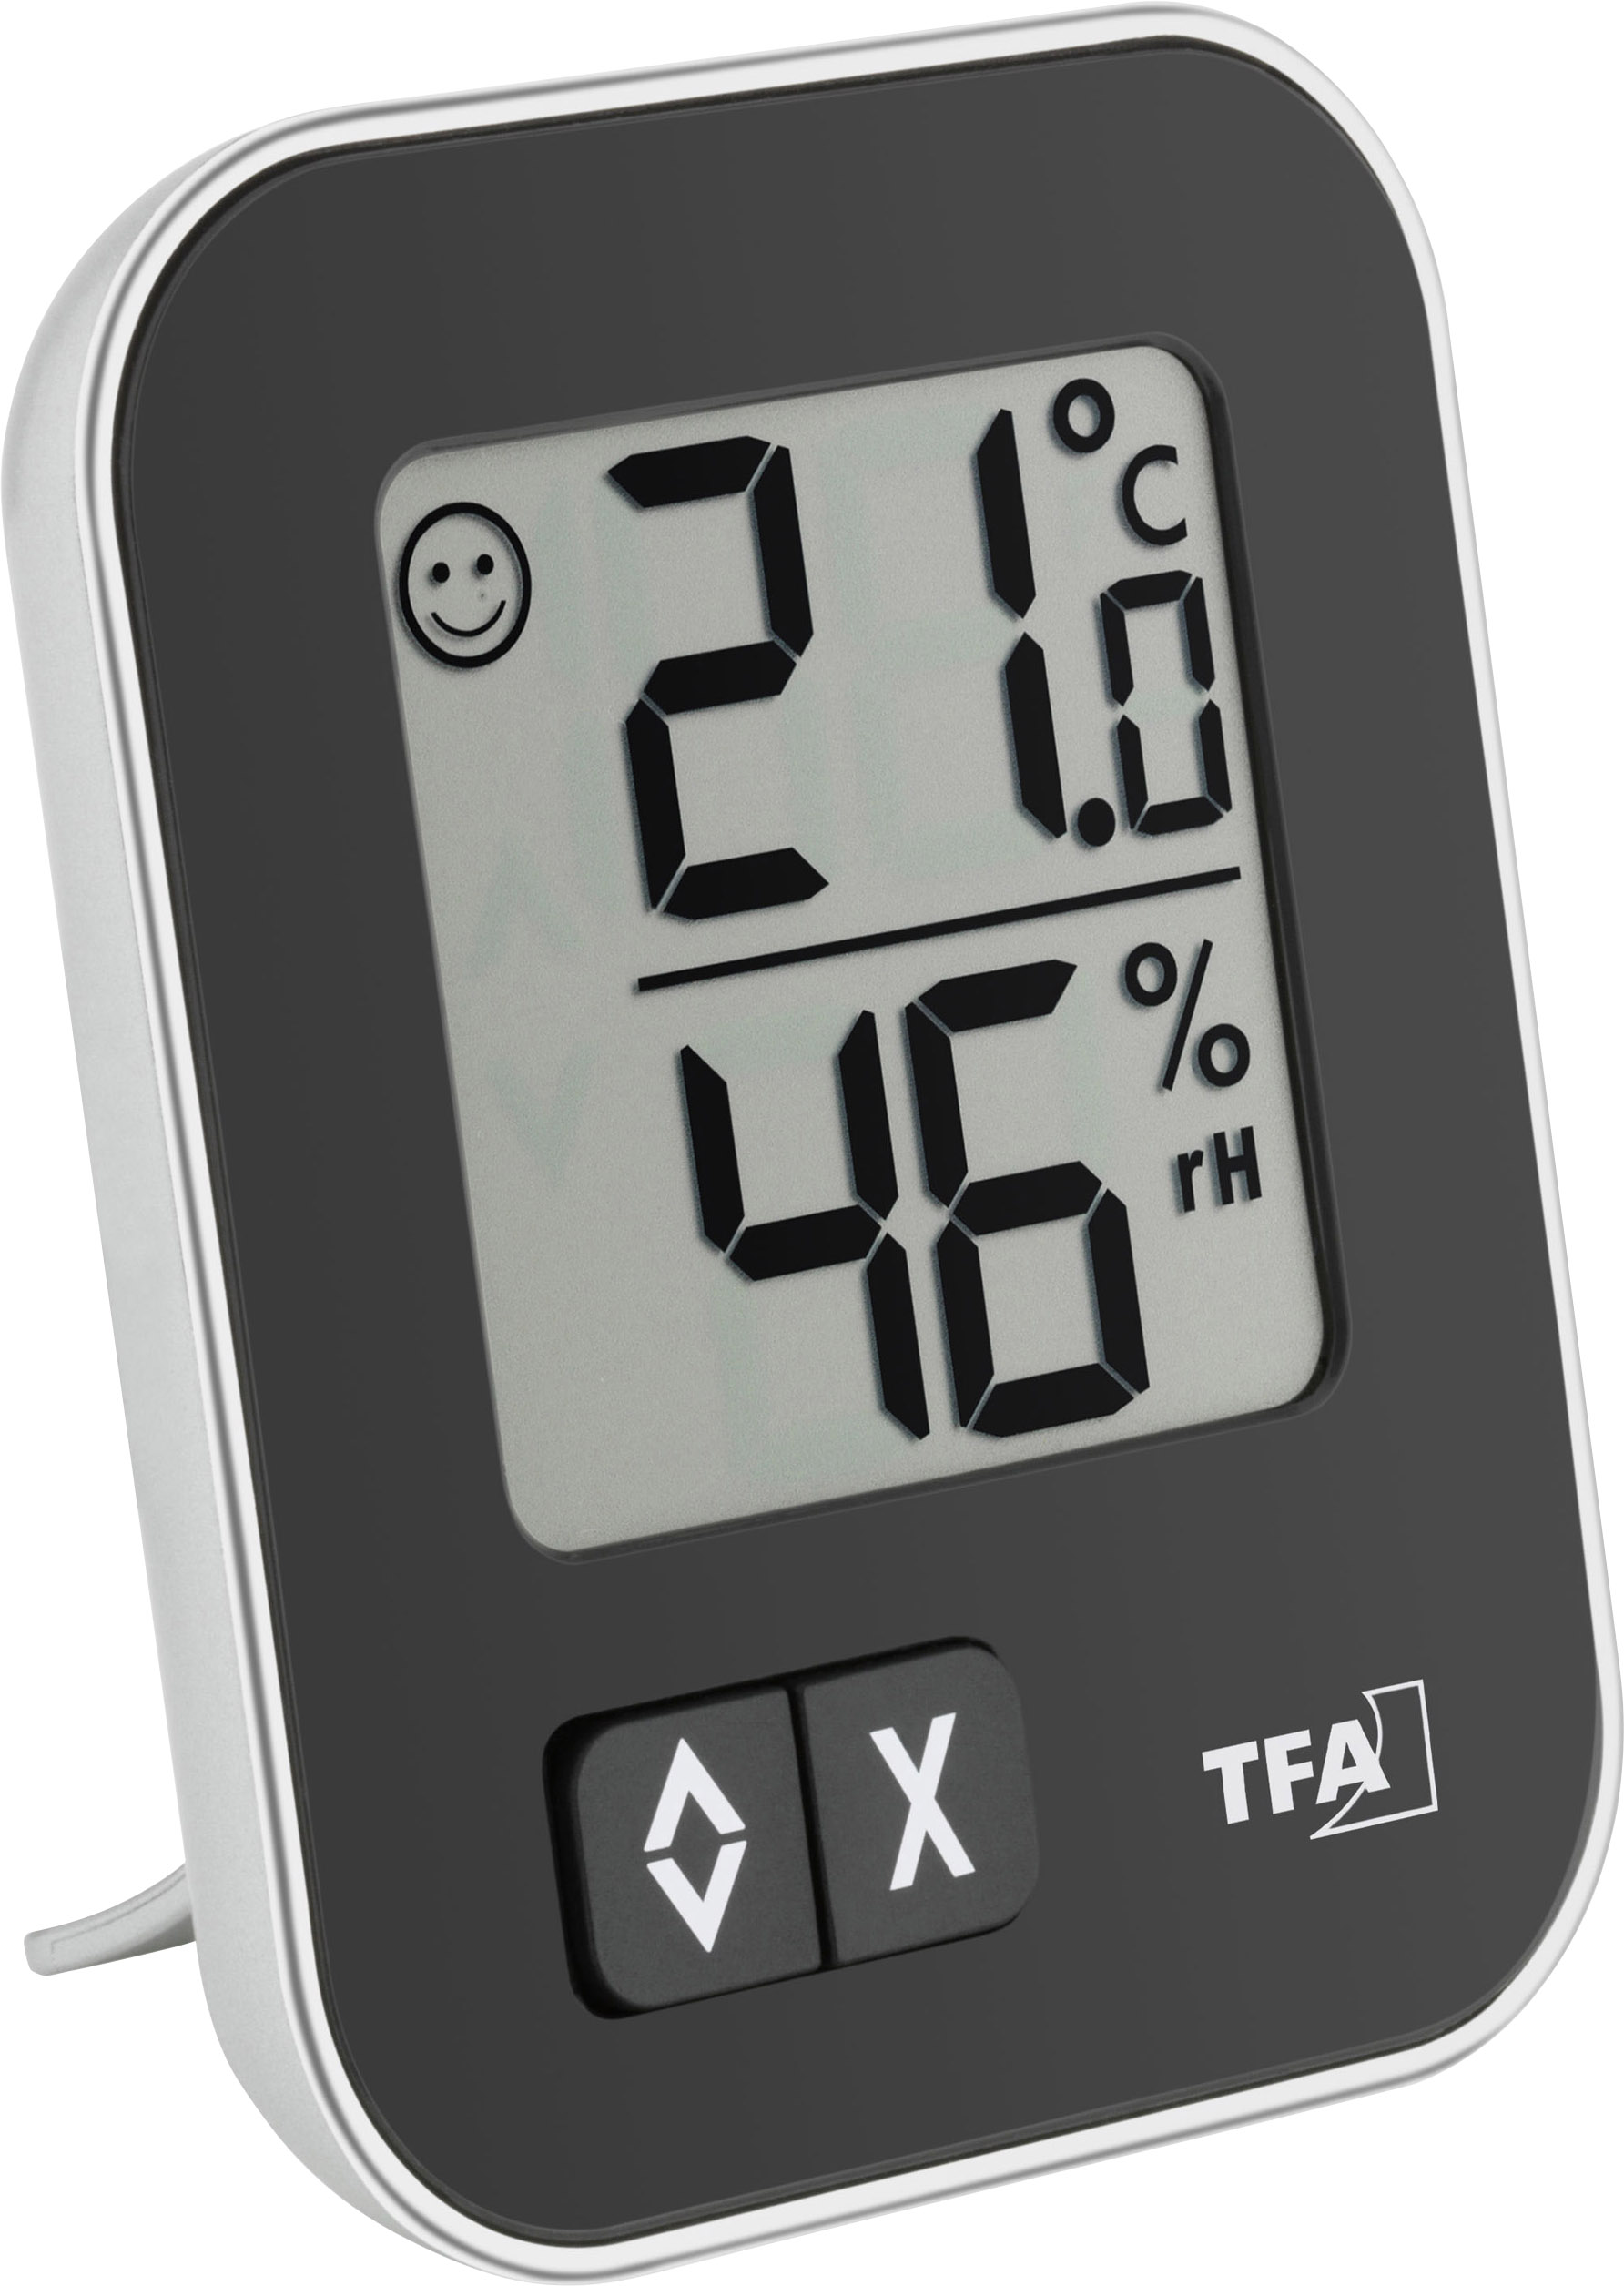 TFA Dostmann 30.5026.01 Luftfeuchtemessgerät (Hygrometer) 20 % rF 99 % rF